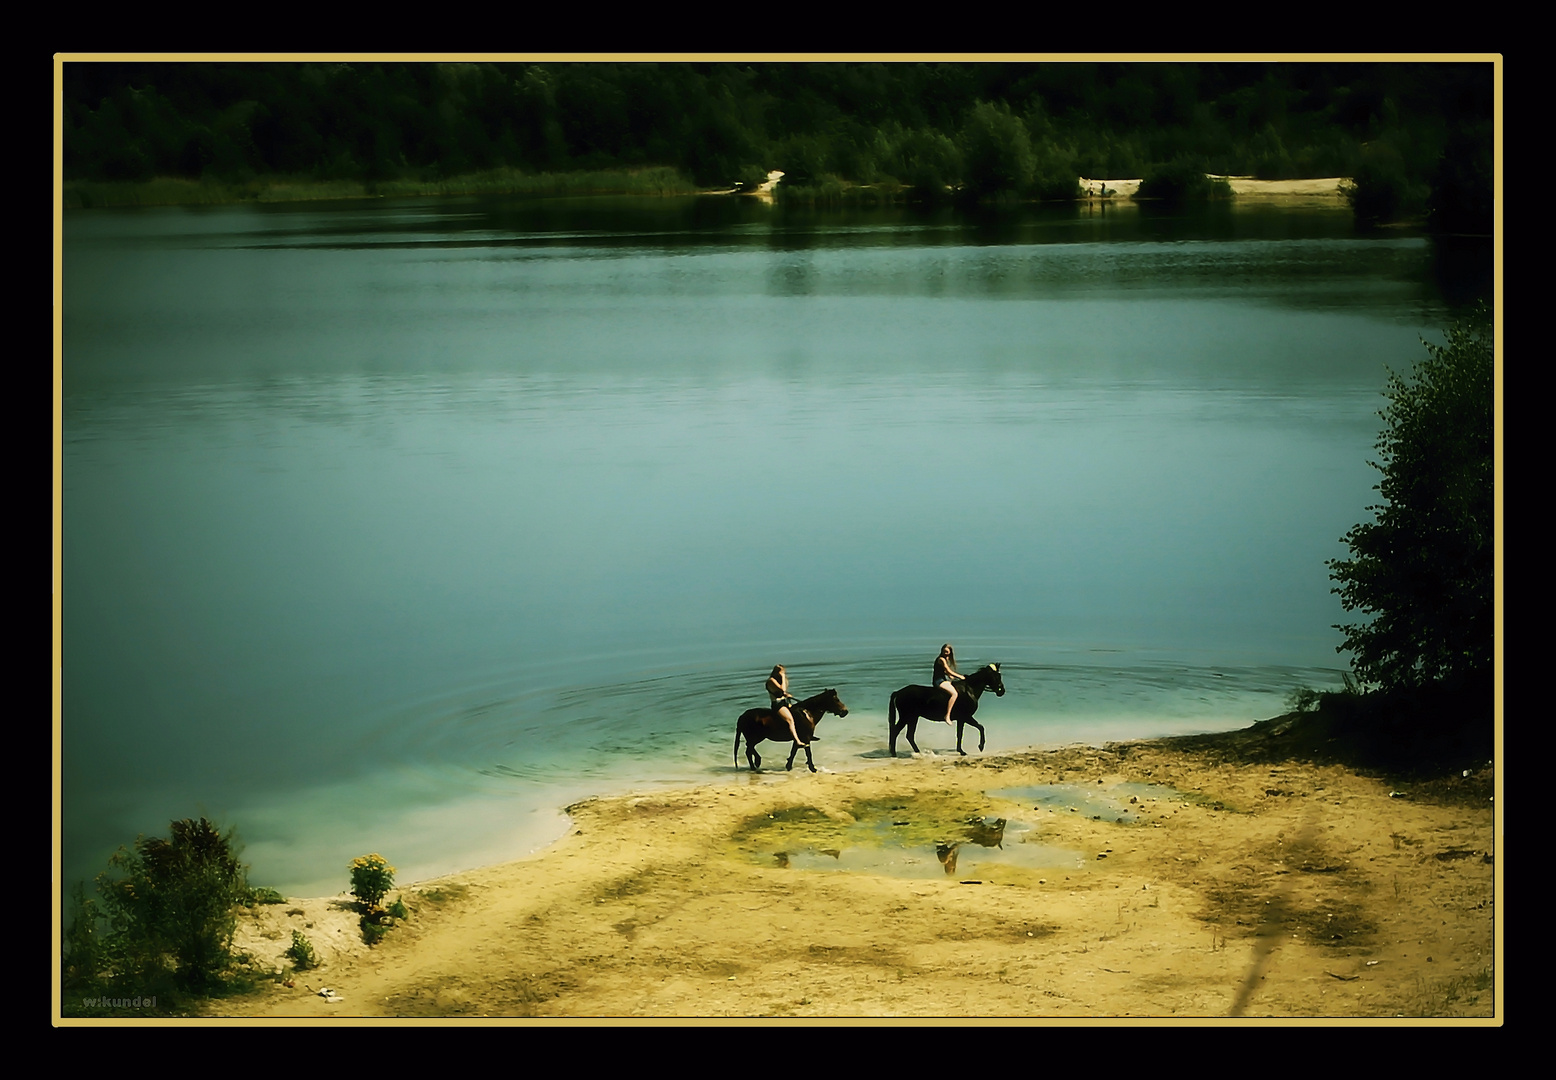 Mädels, Pferde und ein See